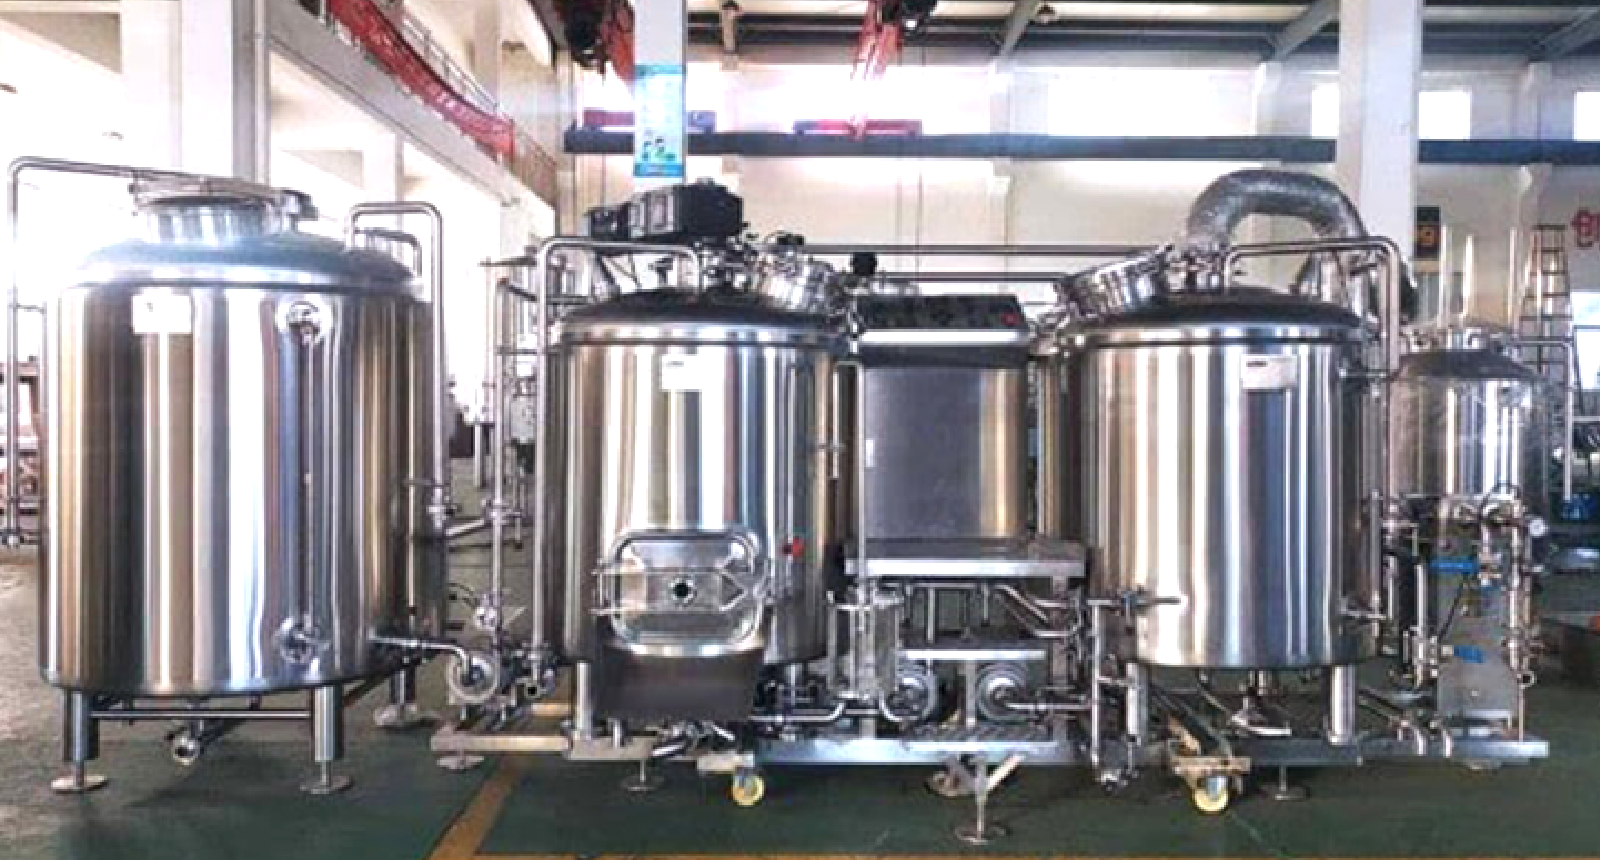 ブルワリー開業コラム①クラフトビール醸造設備・機器の選び方